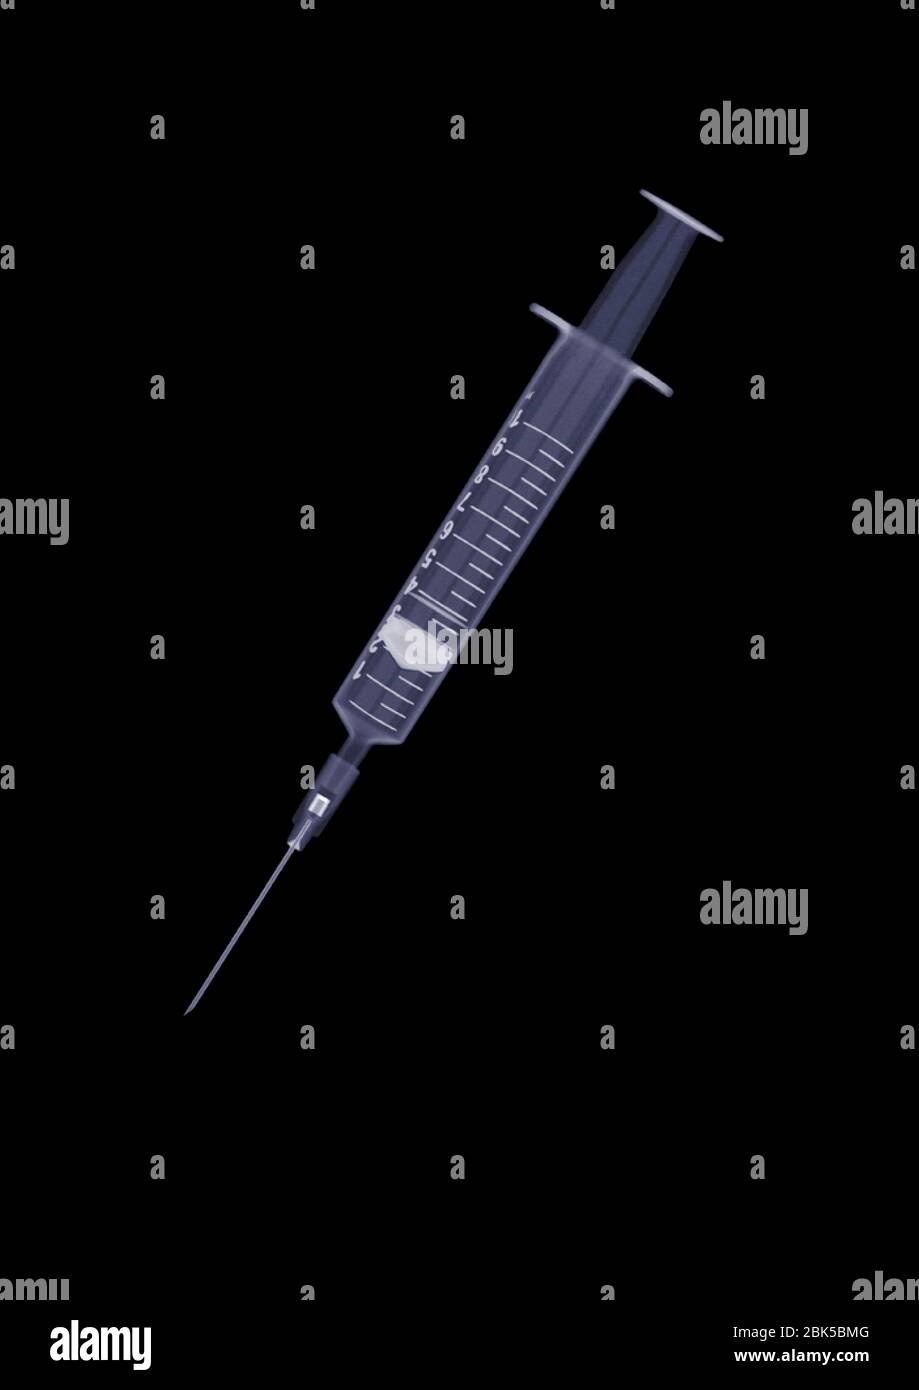 Medical syringe, X-ray. Stock Photo